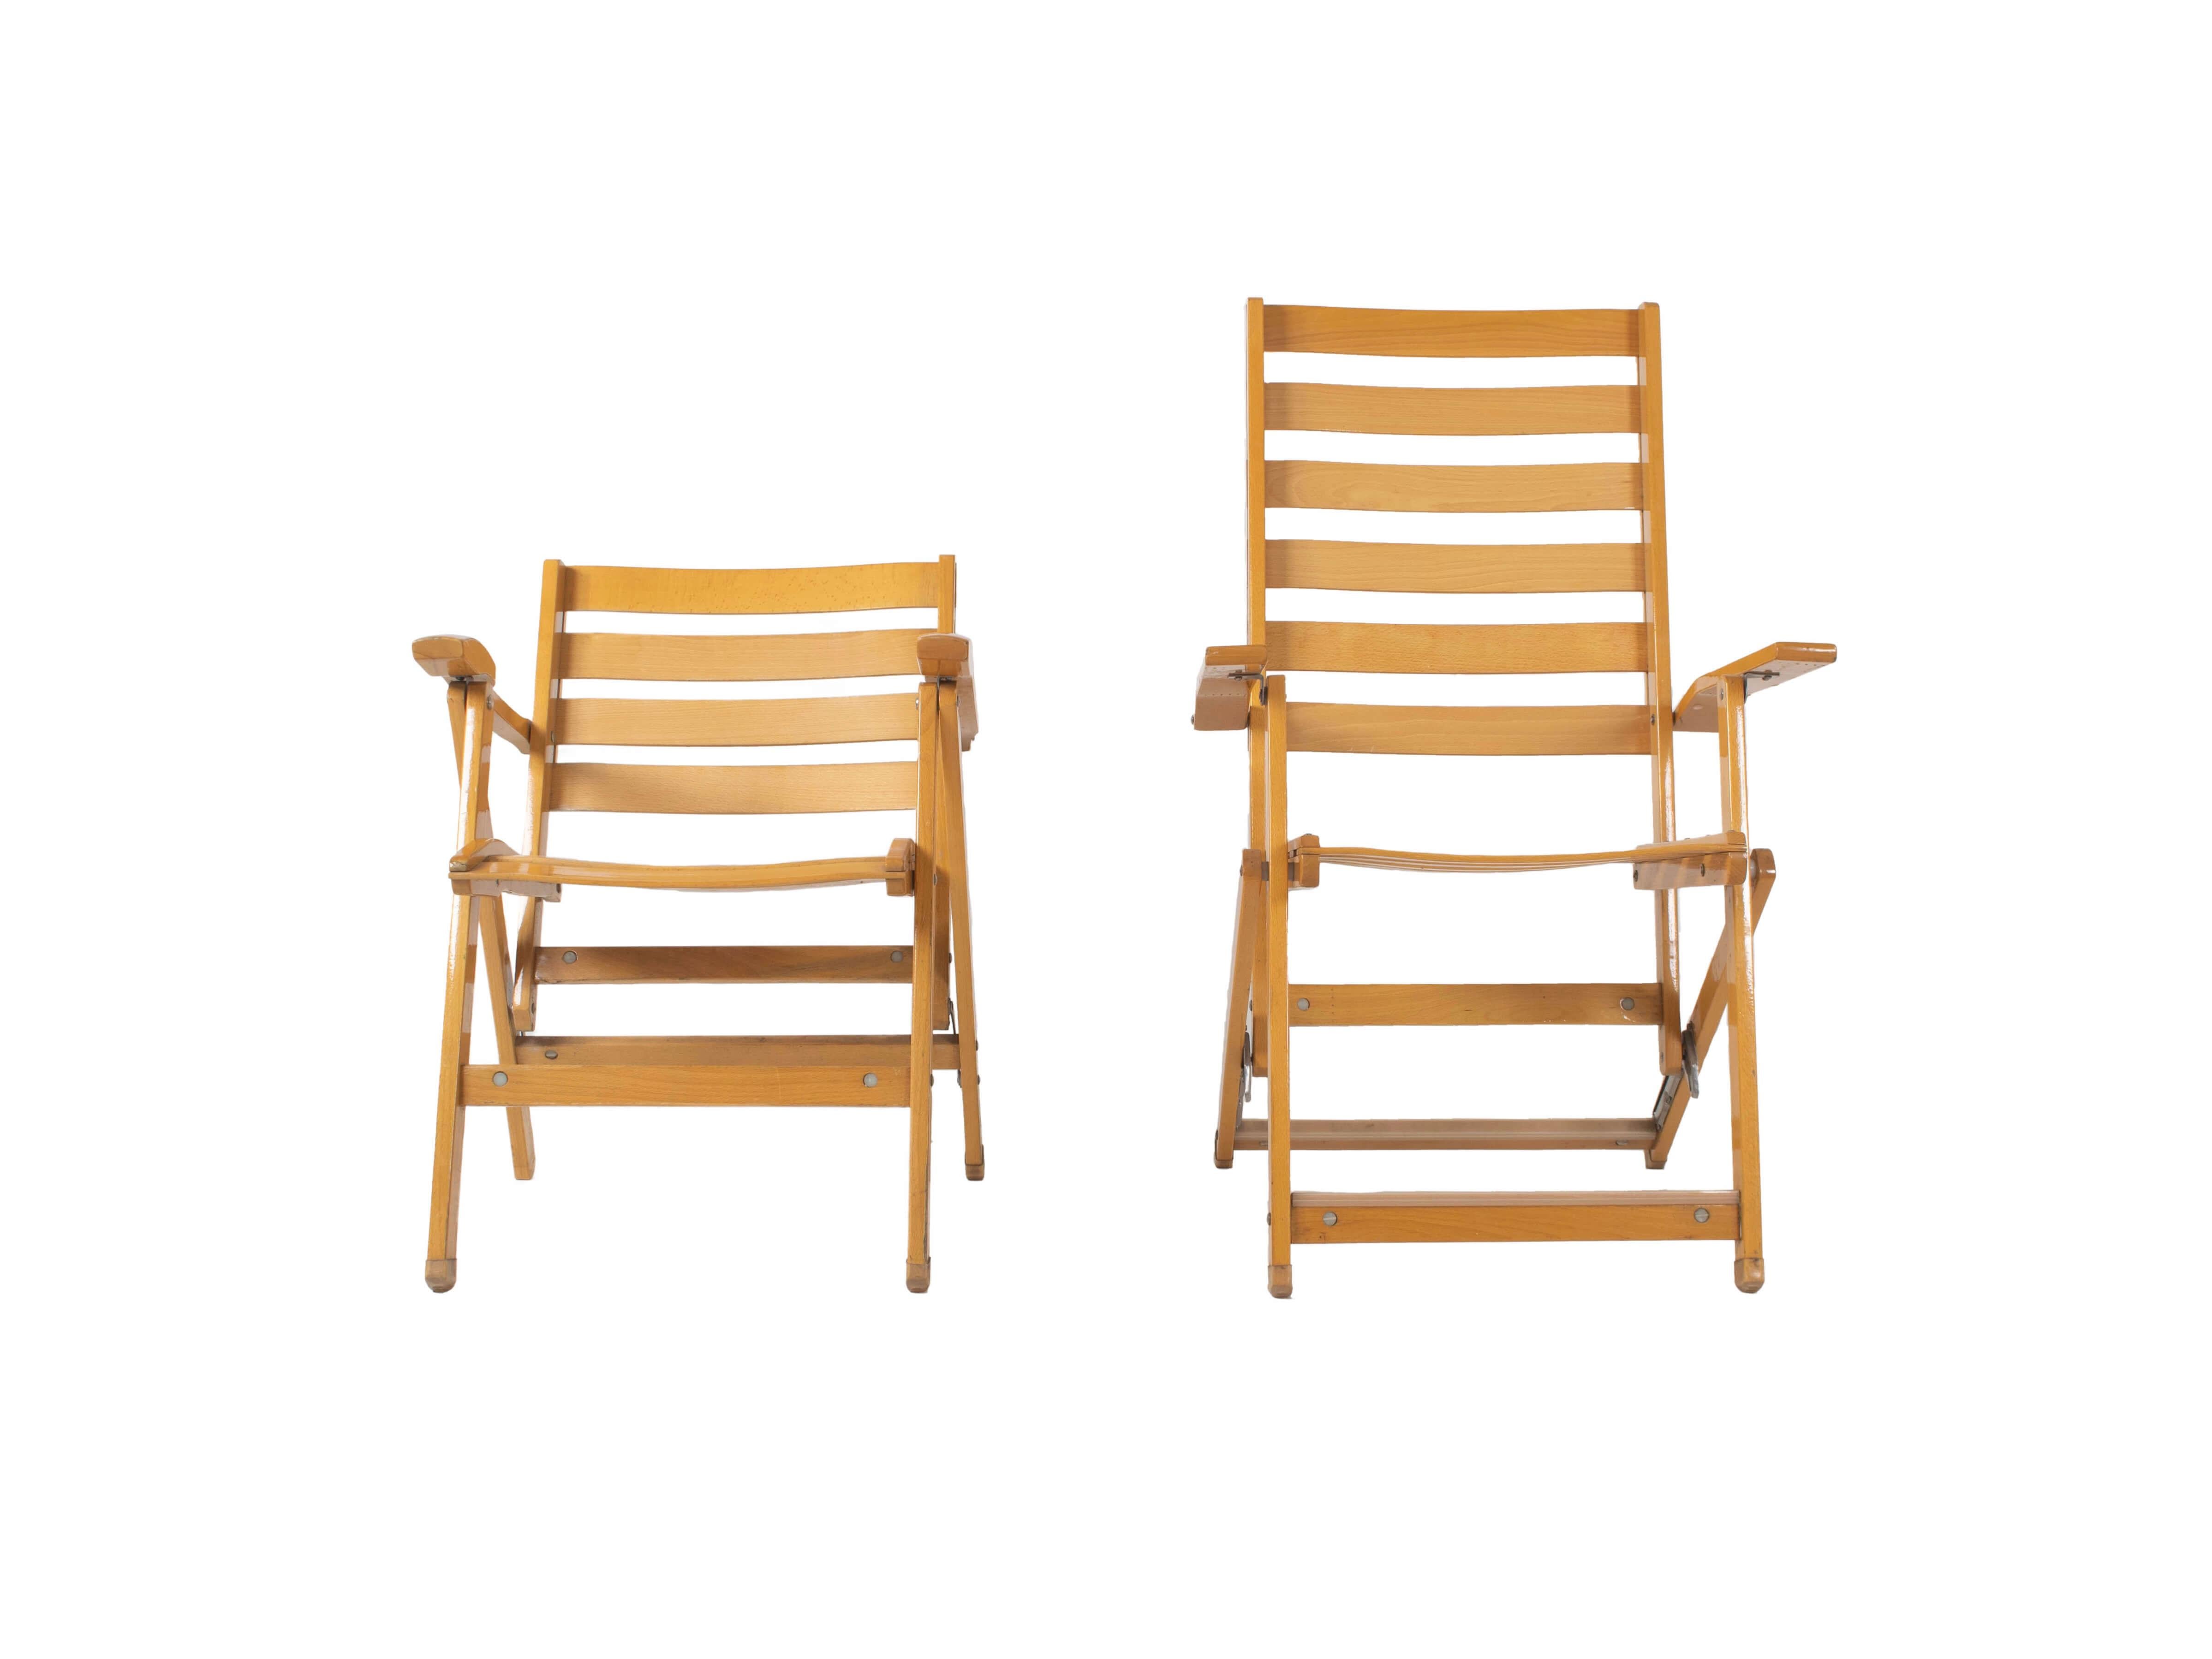 Ensemble de chaises longues pliantes Ico Parisi pour Fratelli Reguitti en bois de hêtre, Italie 1970. Cet ensemble se compose d'une chaise longue pliante inférieure et supérieure, y compris les coussins bleus Reguitti d'origine. Ils ont fière allure